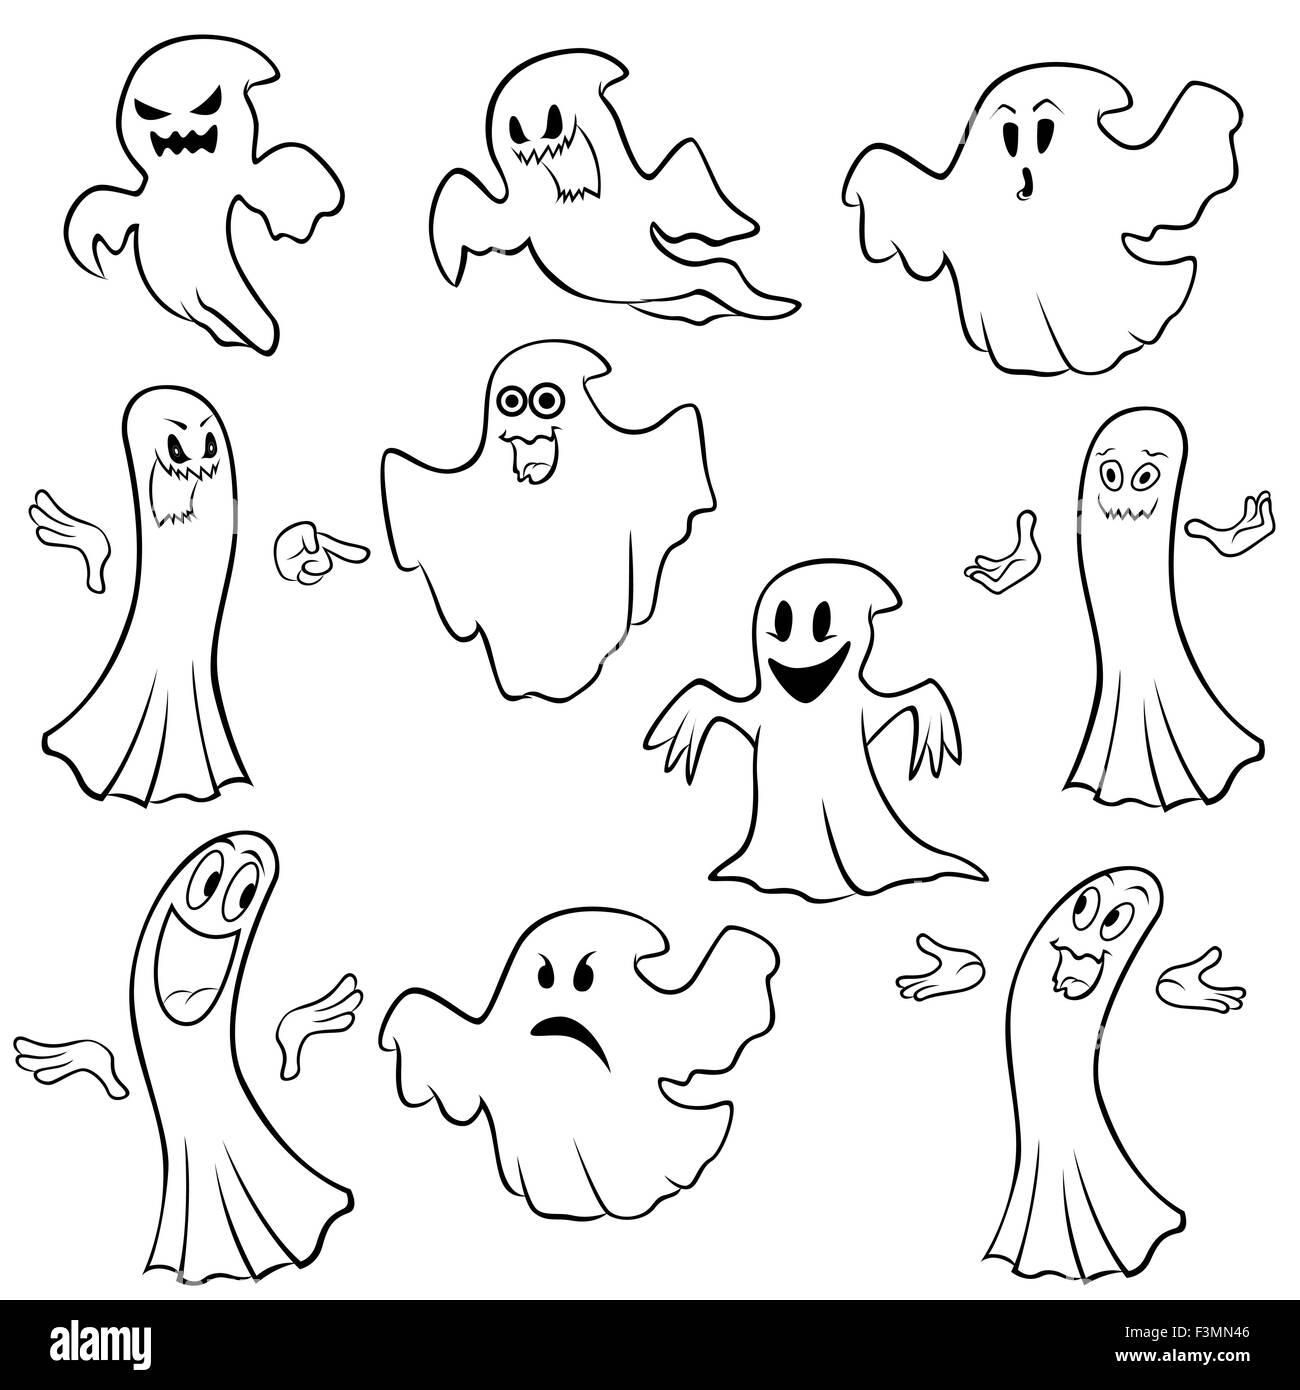 Ensemble de dix grandes lignes avec différents personnages ghost isolé sur un fond blanc, cartoon Halloween vector illustration Illustration de Vecteur